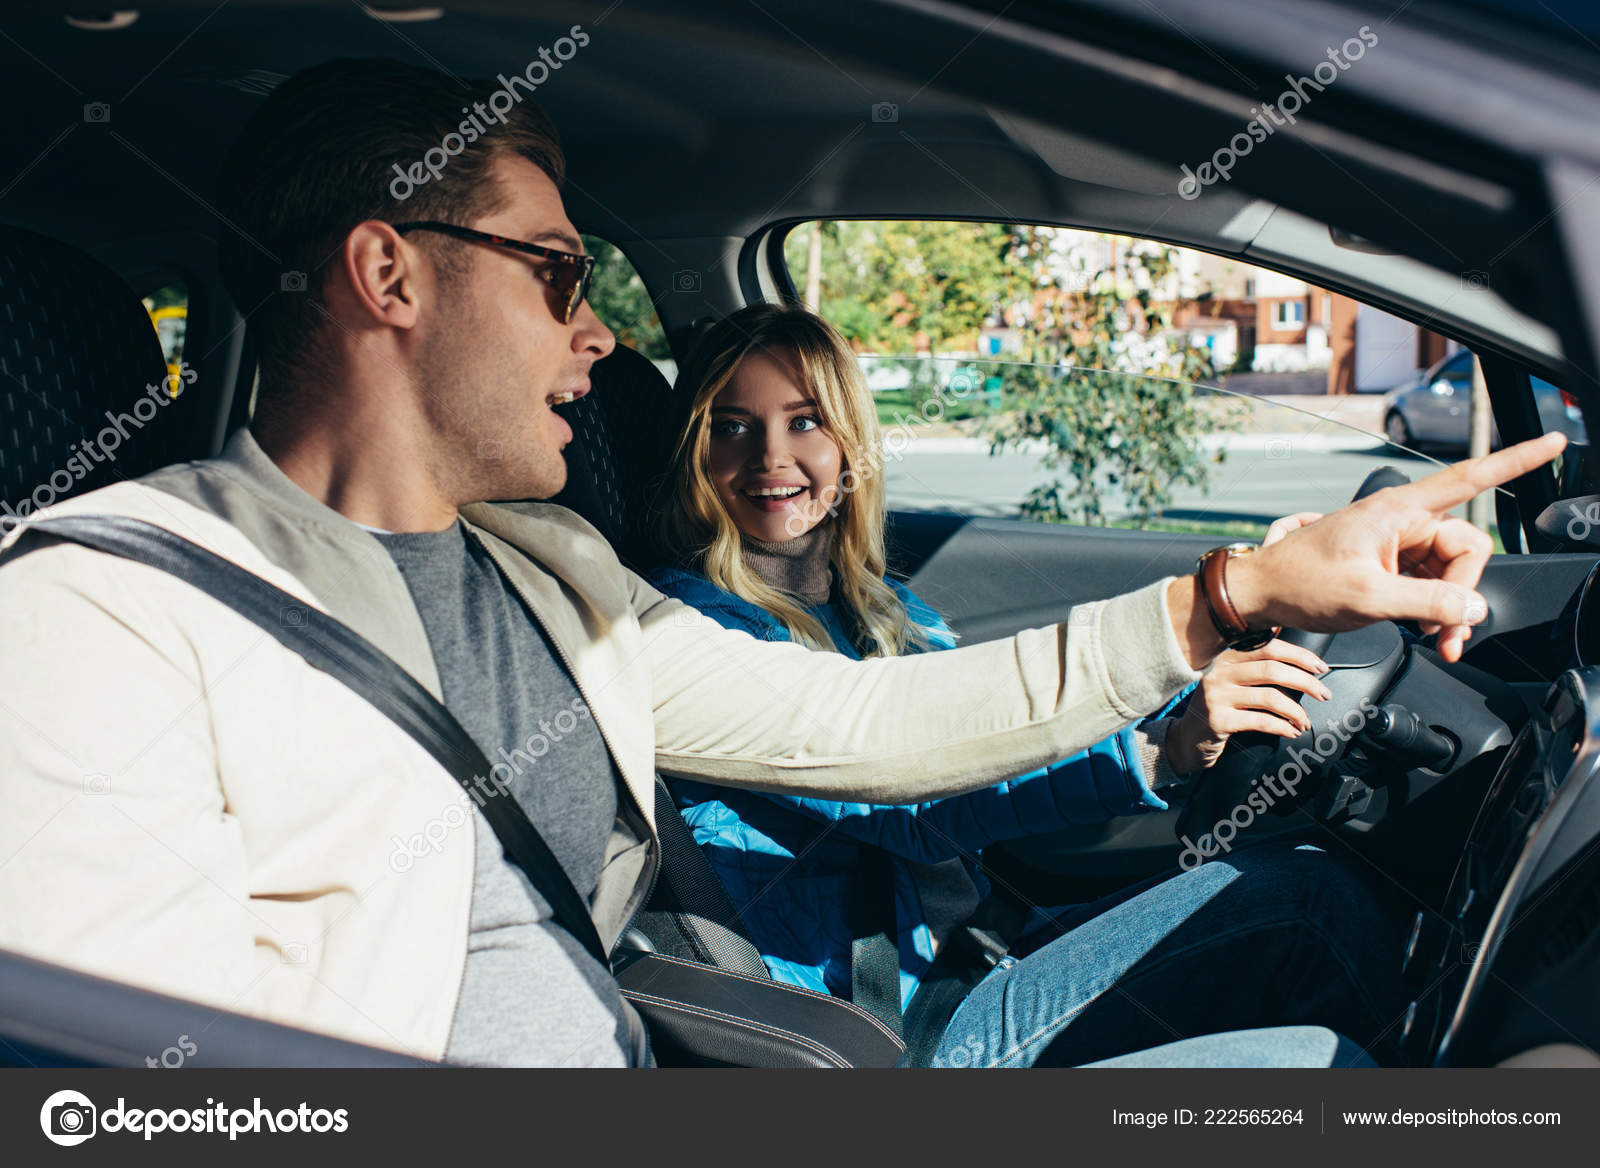 Adam Arabada Karıya Yaslıyor